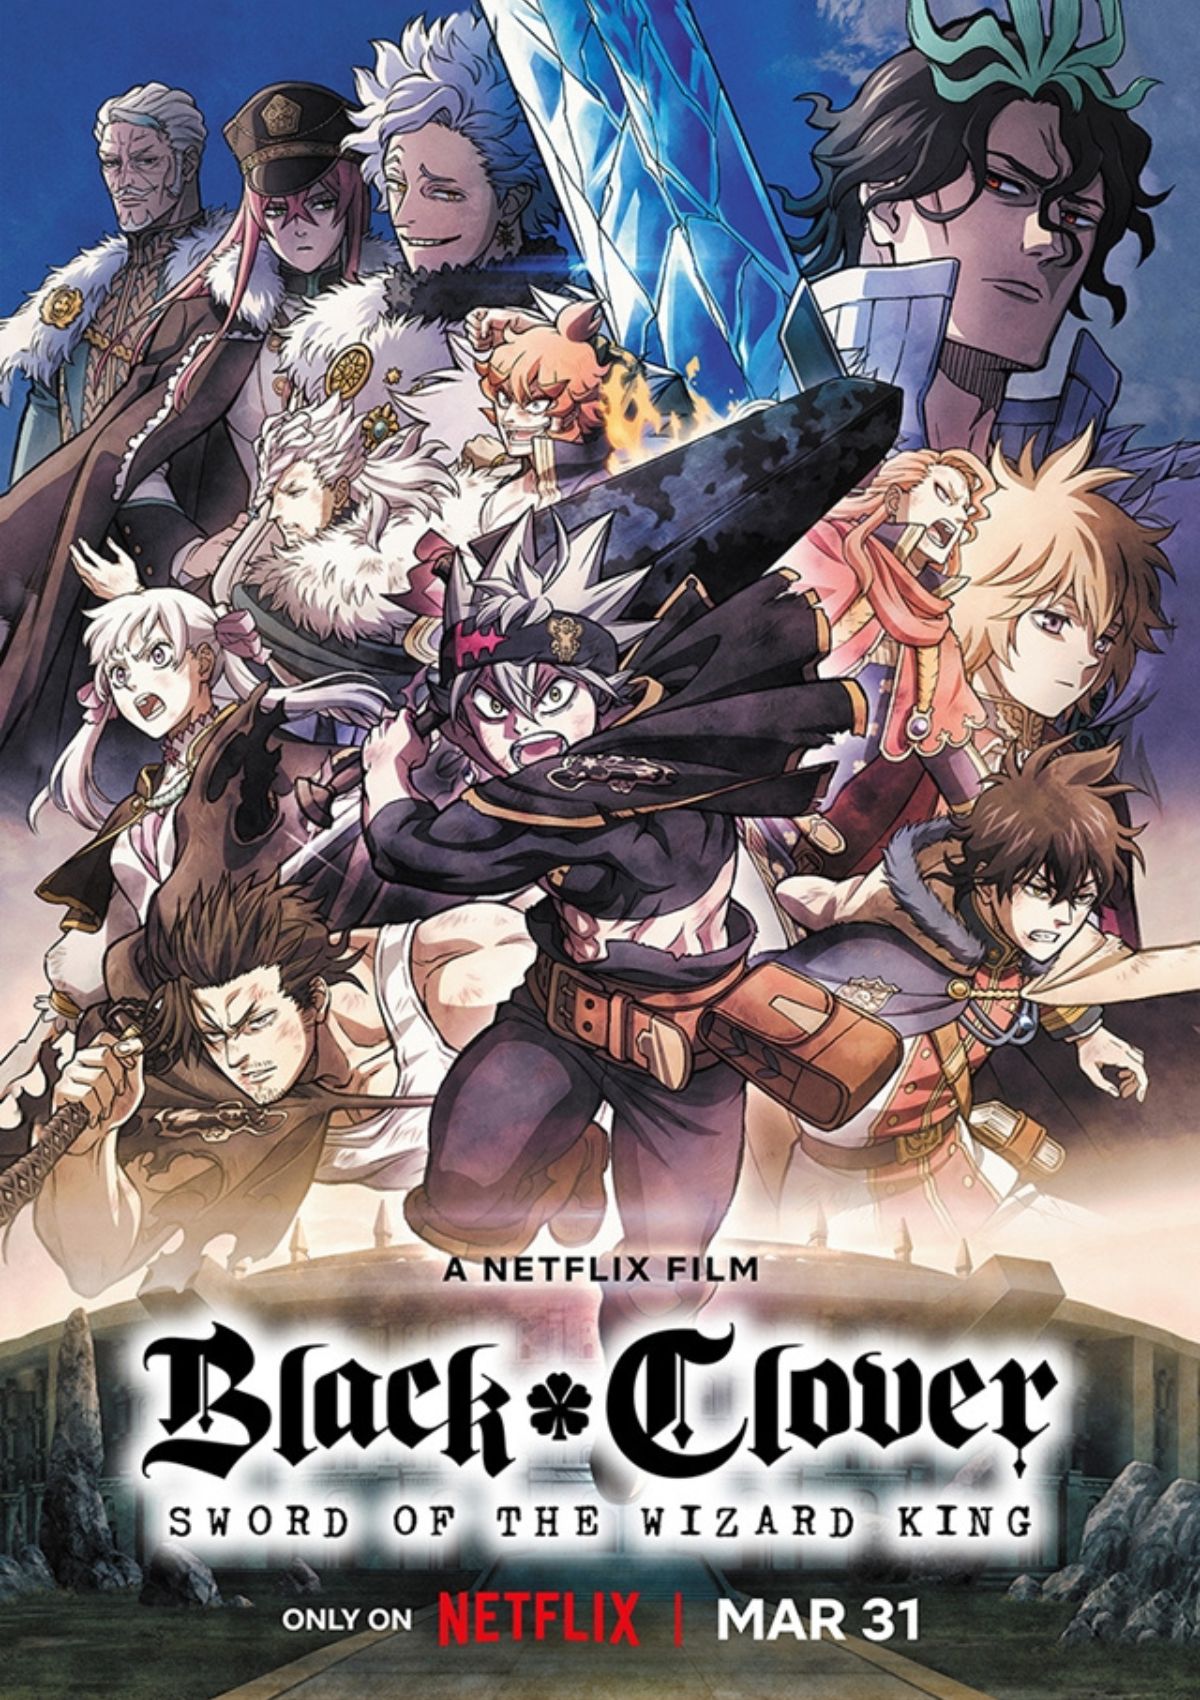 Black Clover: Hãy cùng khám phá thế giới phép thuật đầy bí ẩn và hấp dẫn trong bộ truyện tranh nổi tiếng Black Clover. Nhân vật chính Asta với khả năng cực mạnh sẽ đưa bạn vào những trận đấu đầy kịch tính và chắc chắn không làm bạn thất vọng.